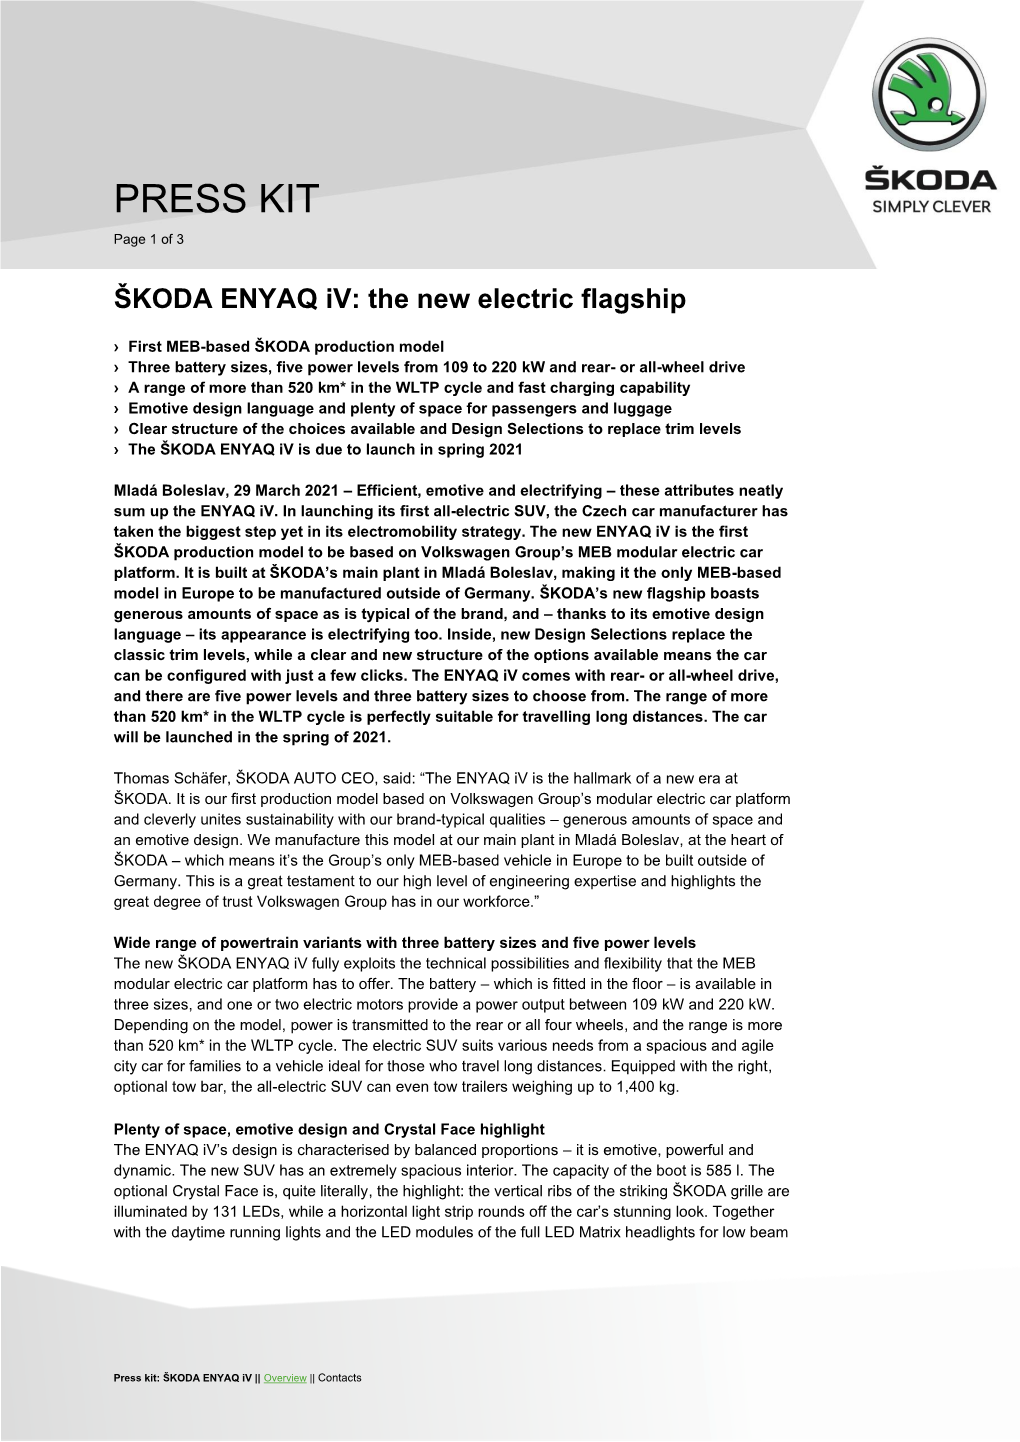 ŠKODA ENYAQ Iv: the New Electric Flagship